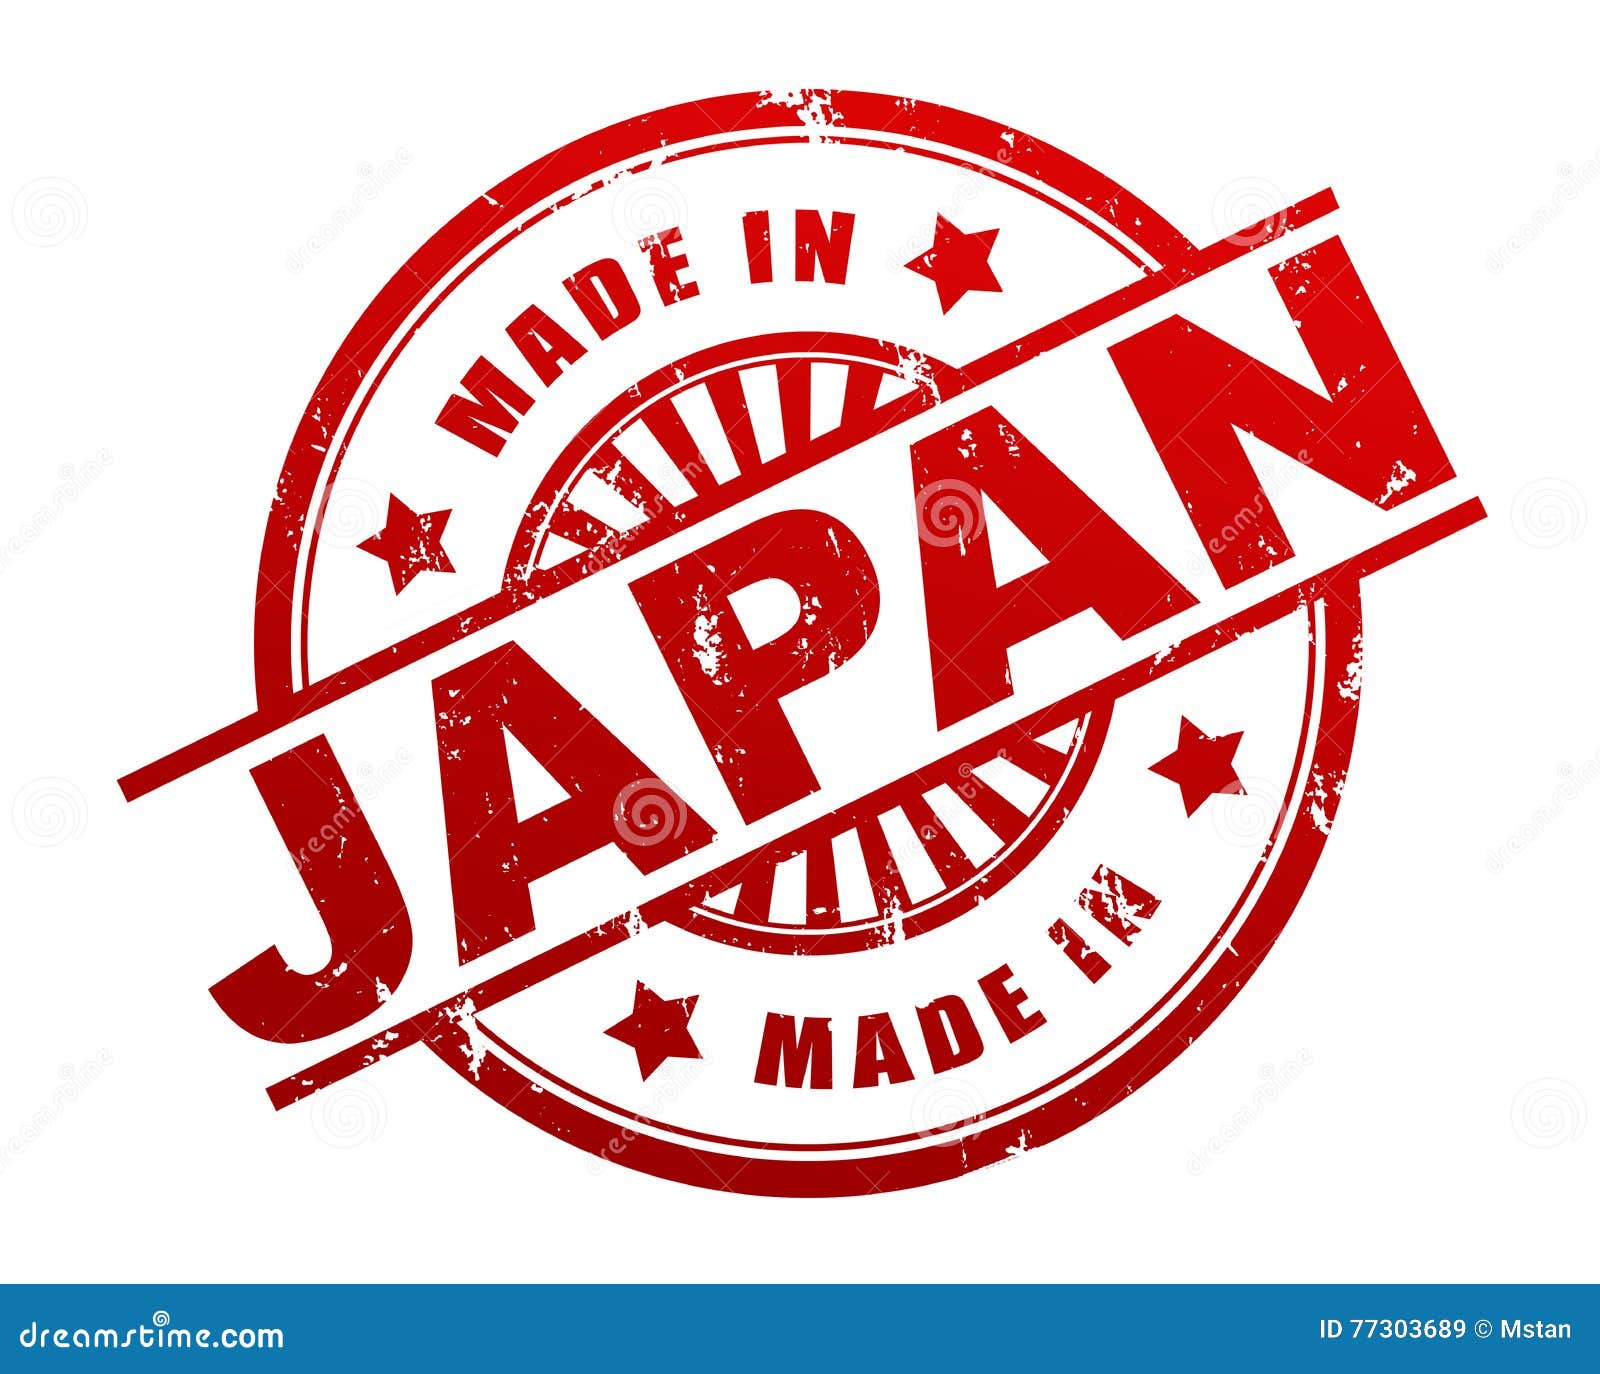 Made in Japan Stamp 3d Illustration Stock Illustration - Illustration